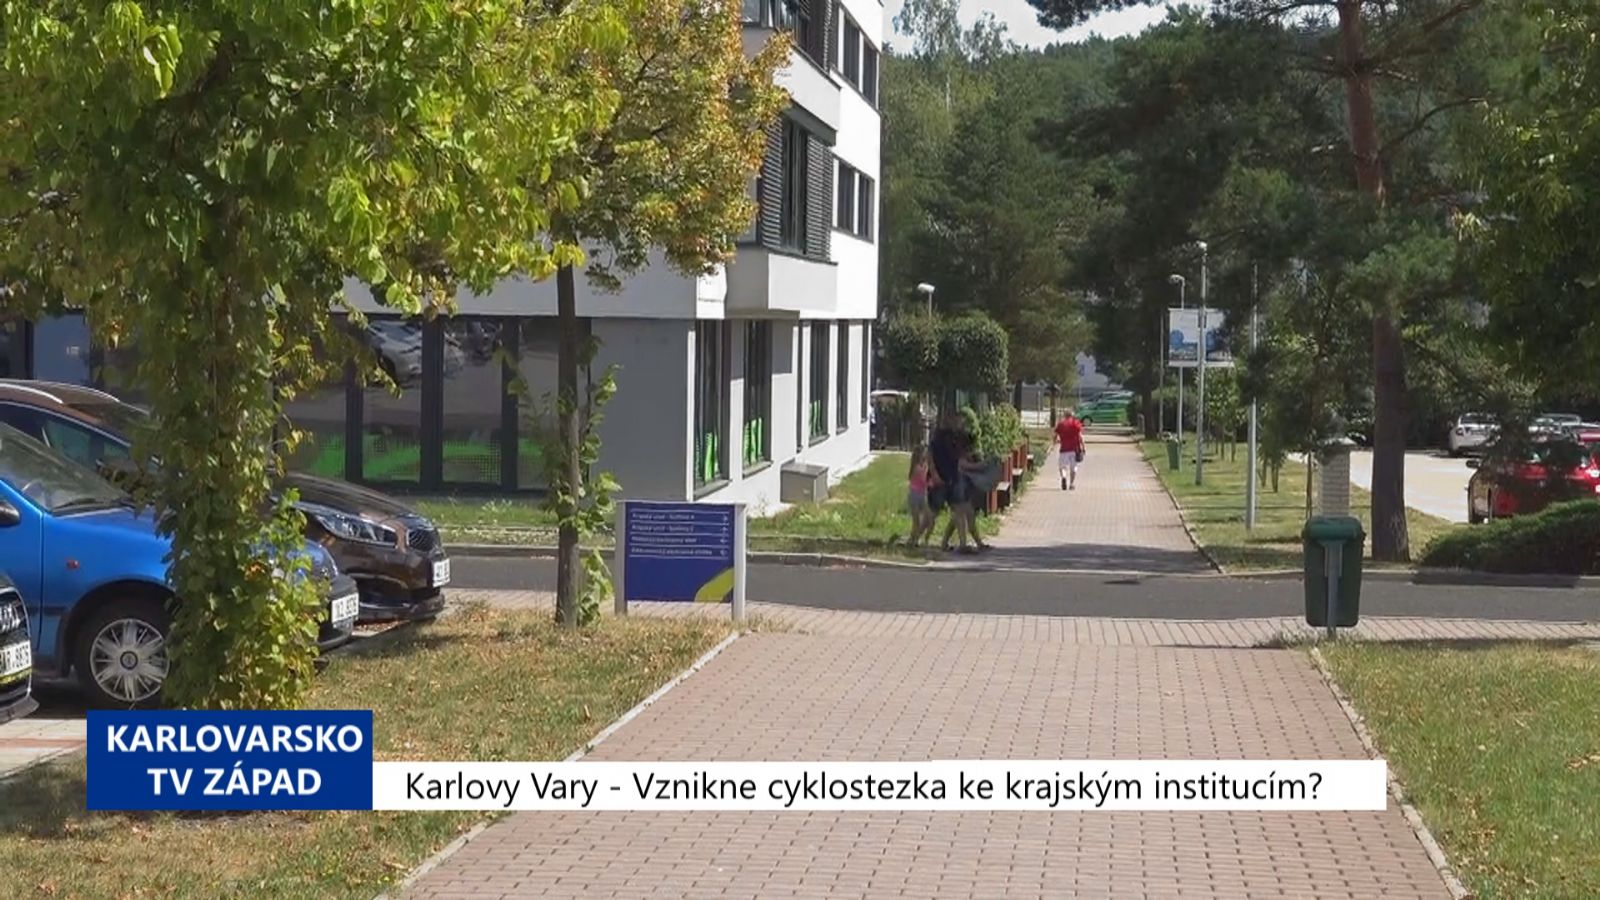 Karlovy Vary: Vznikne cyklostezka ke krajským institucím? (TV Západ)